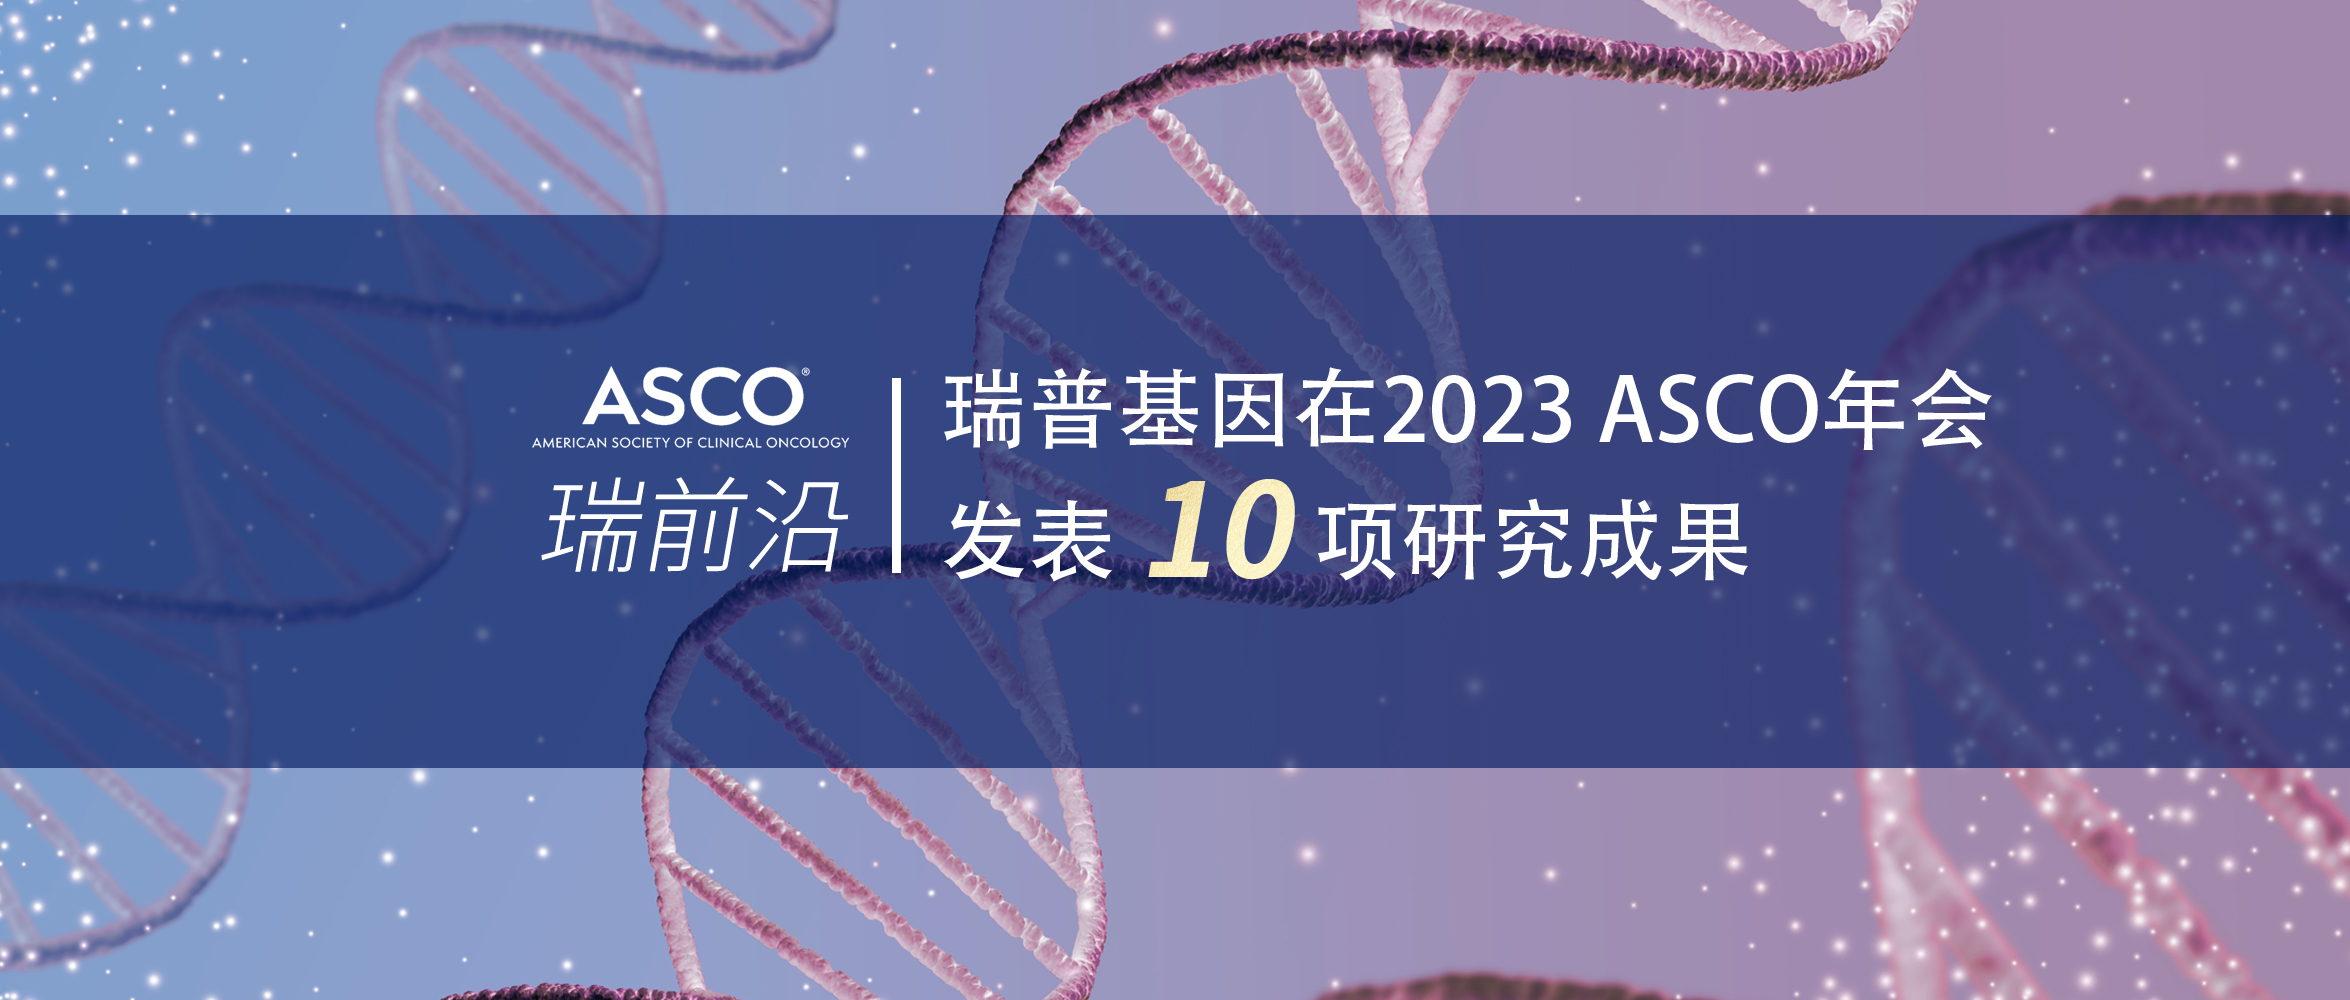 瑞普基因在2023 ASCO年会发表10项研究